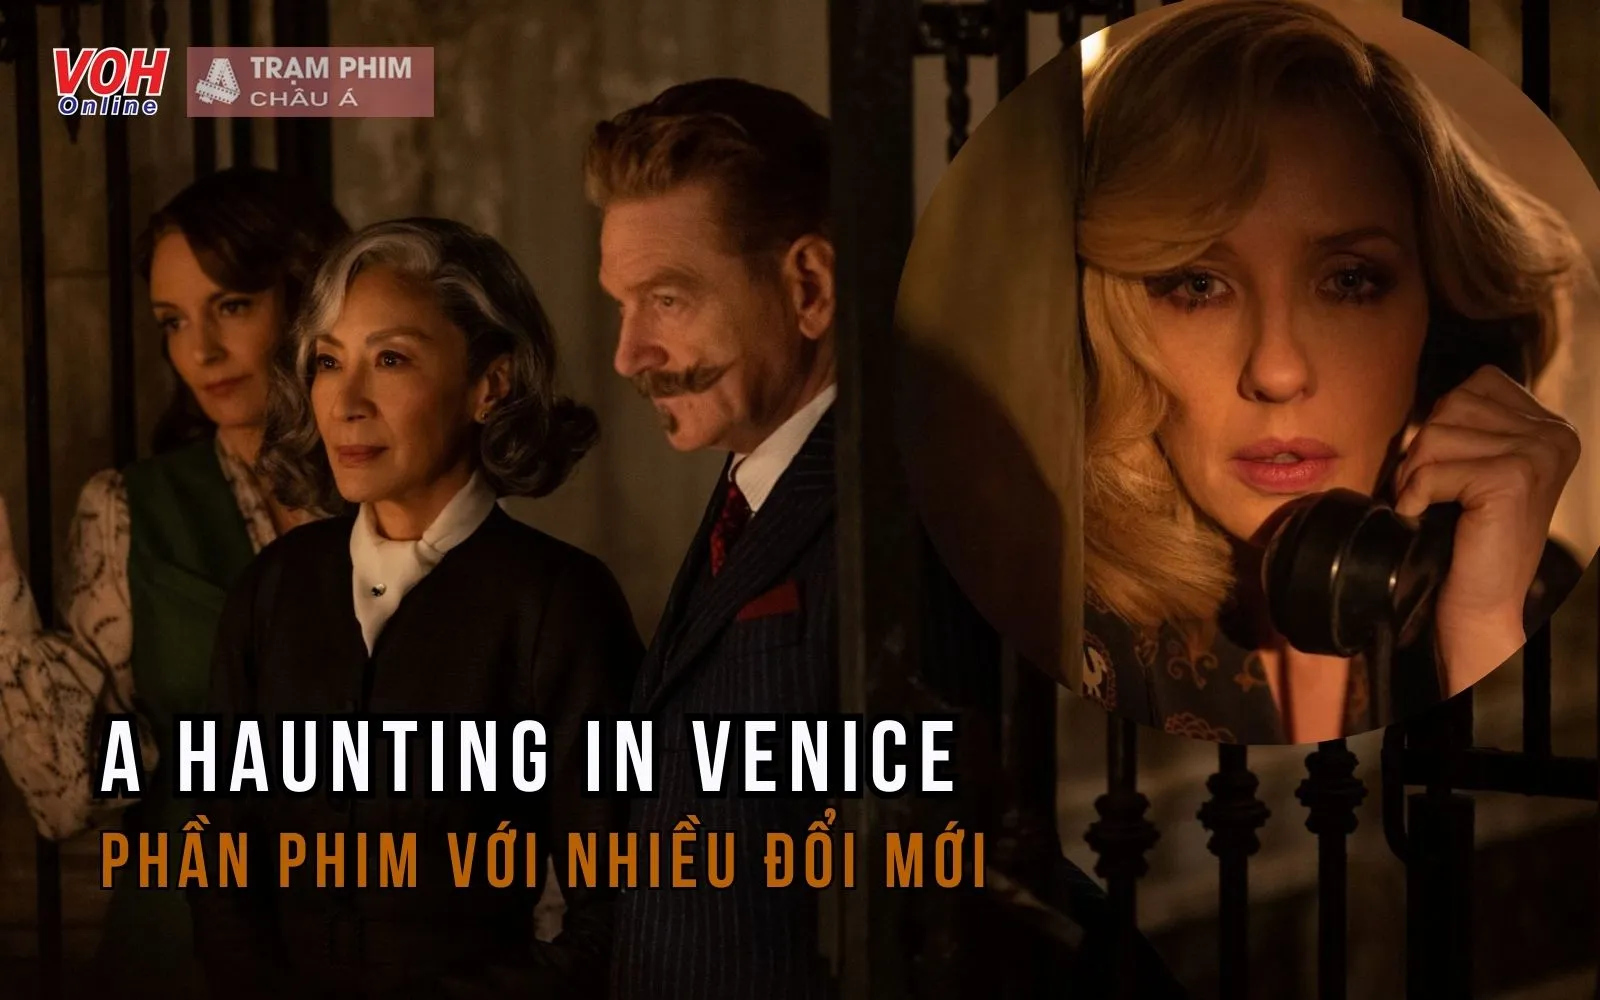 A Haunting in Venice - Phần phim khác biệt về Hercule Poirot